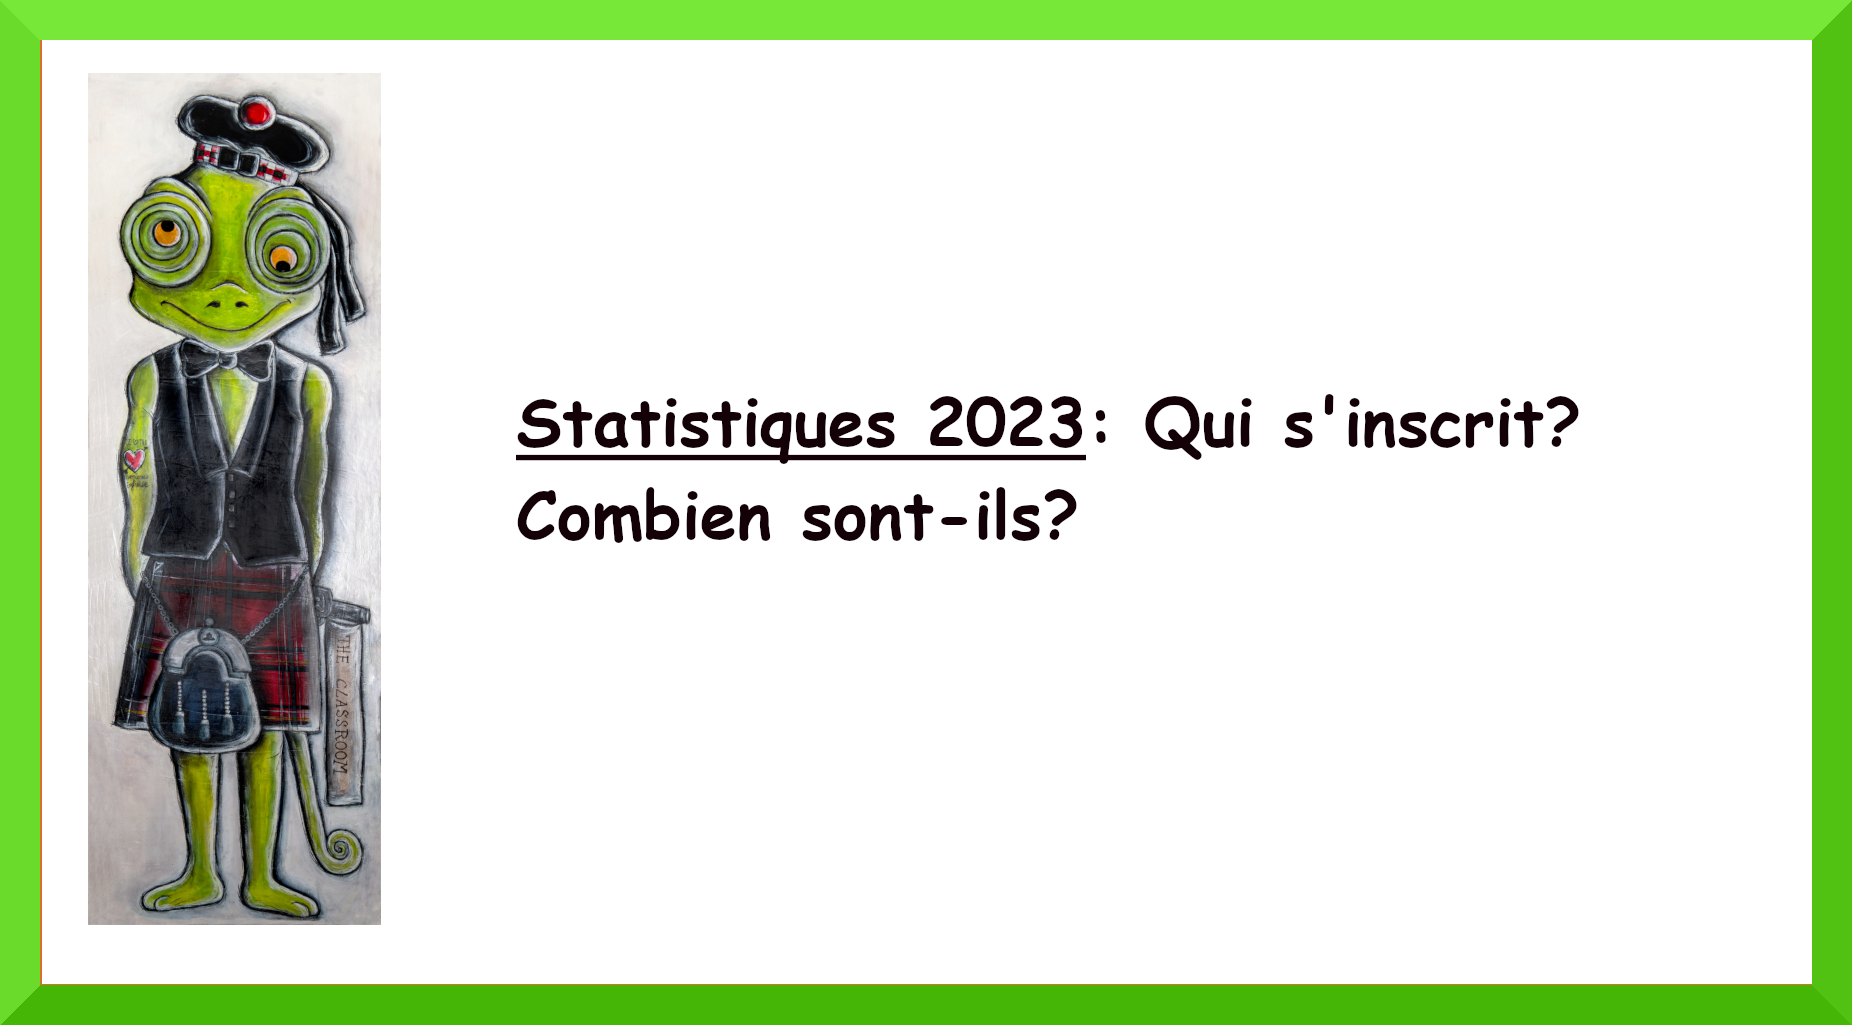 Statistiques 2023-Qui s'inscrit? Combien sont-ils?